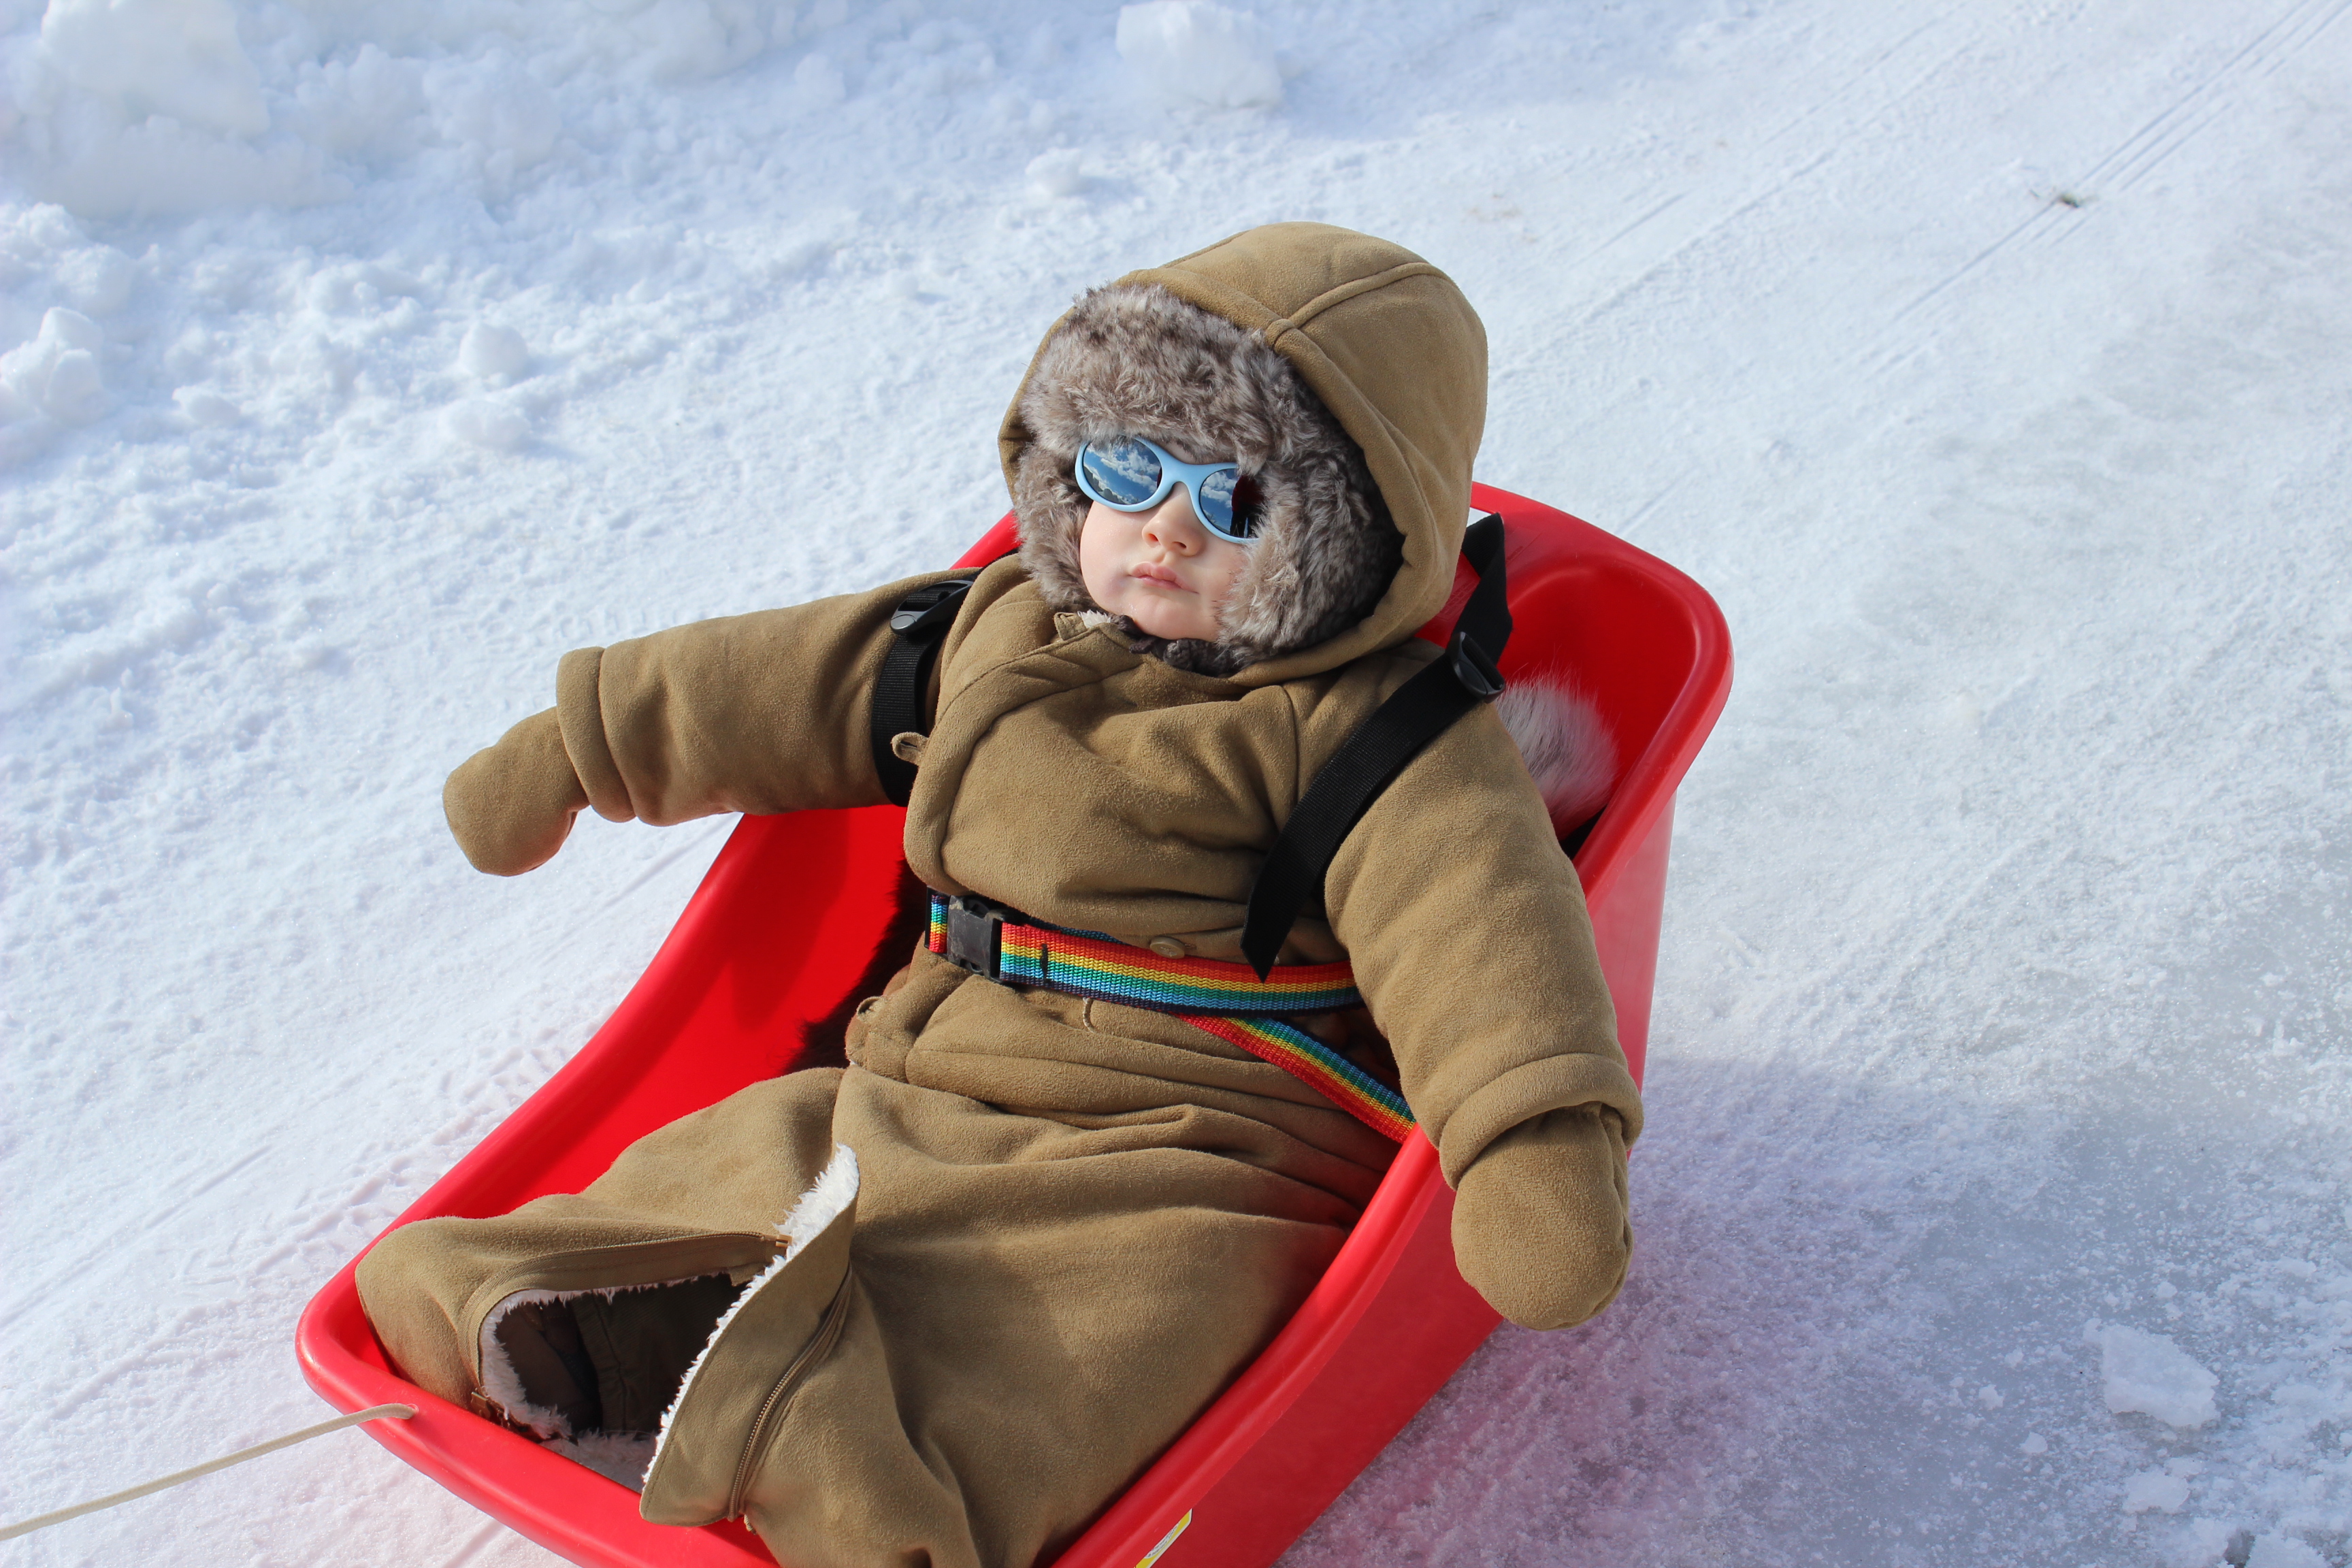 Équipement grand froid — Comment bien s'habiller pour une destination  nordique ?